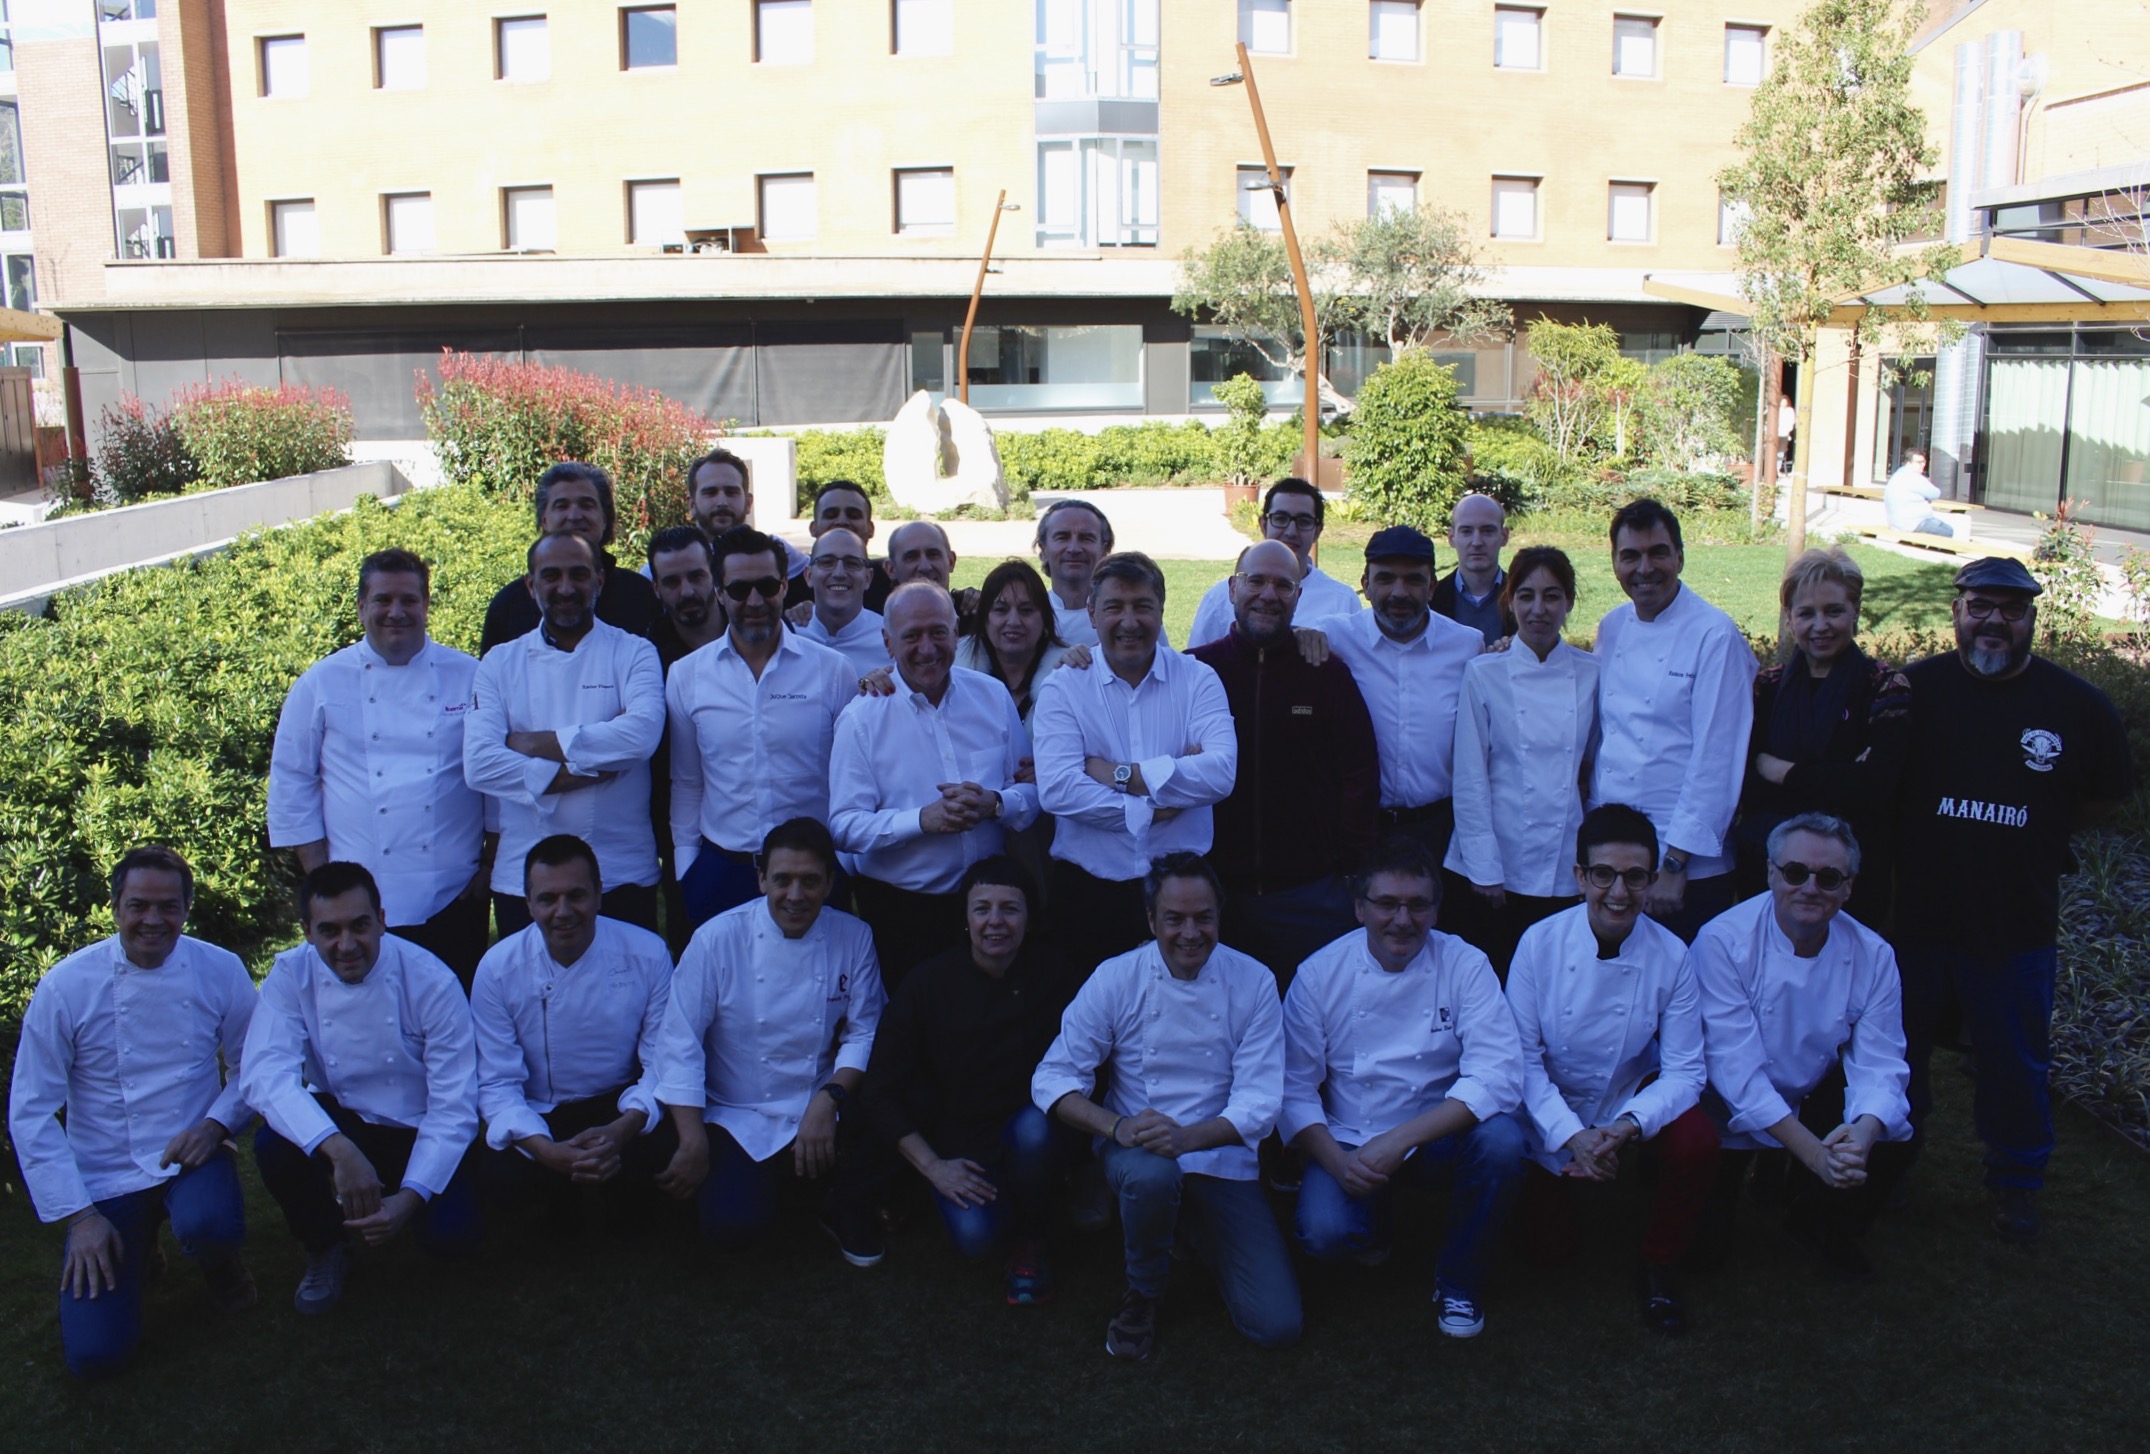 Fotografia de: Celebritats del sector de la gastronomia i 37 estrelles Michelin es reuneixen al Campus CETT-UB | CETT